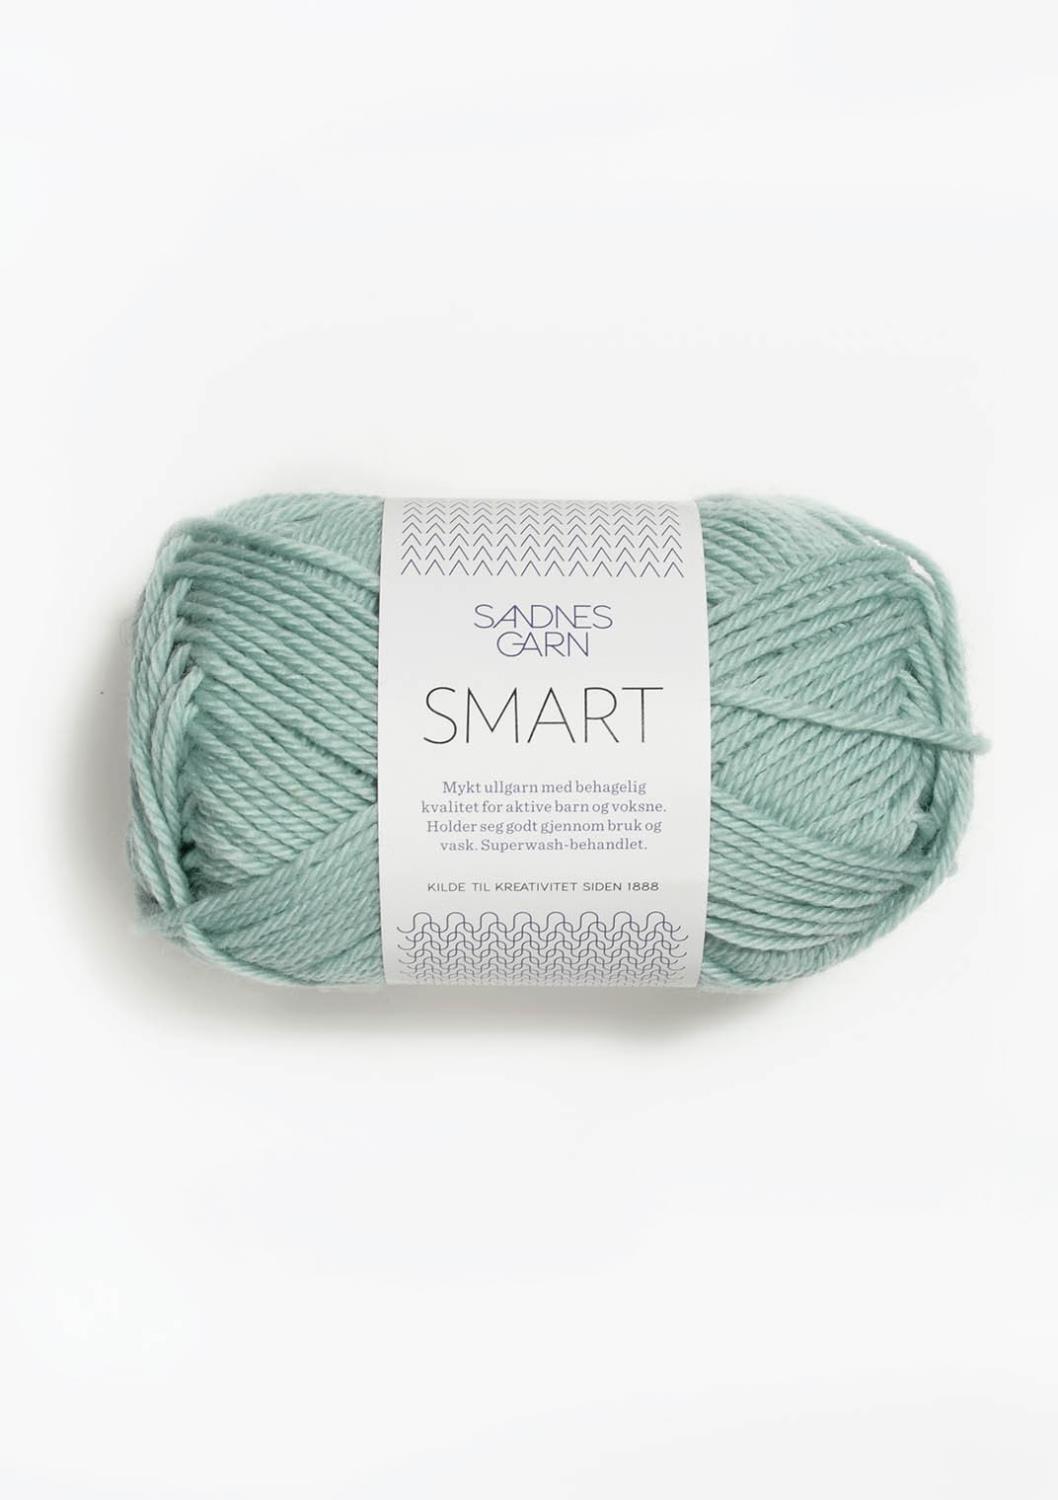 Smart Sandnes 7721 - Lys Sjøgrønn